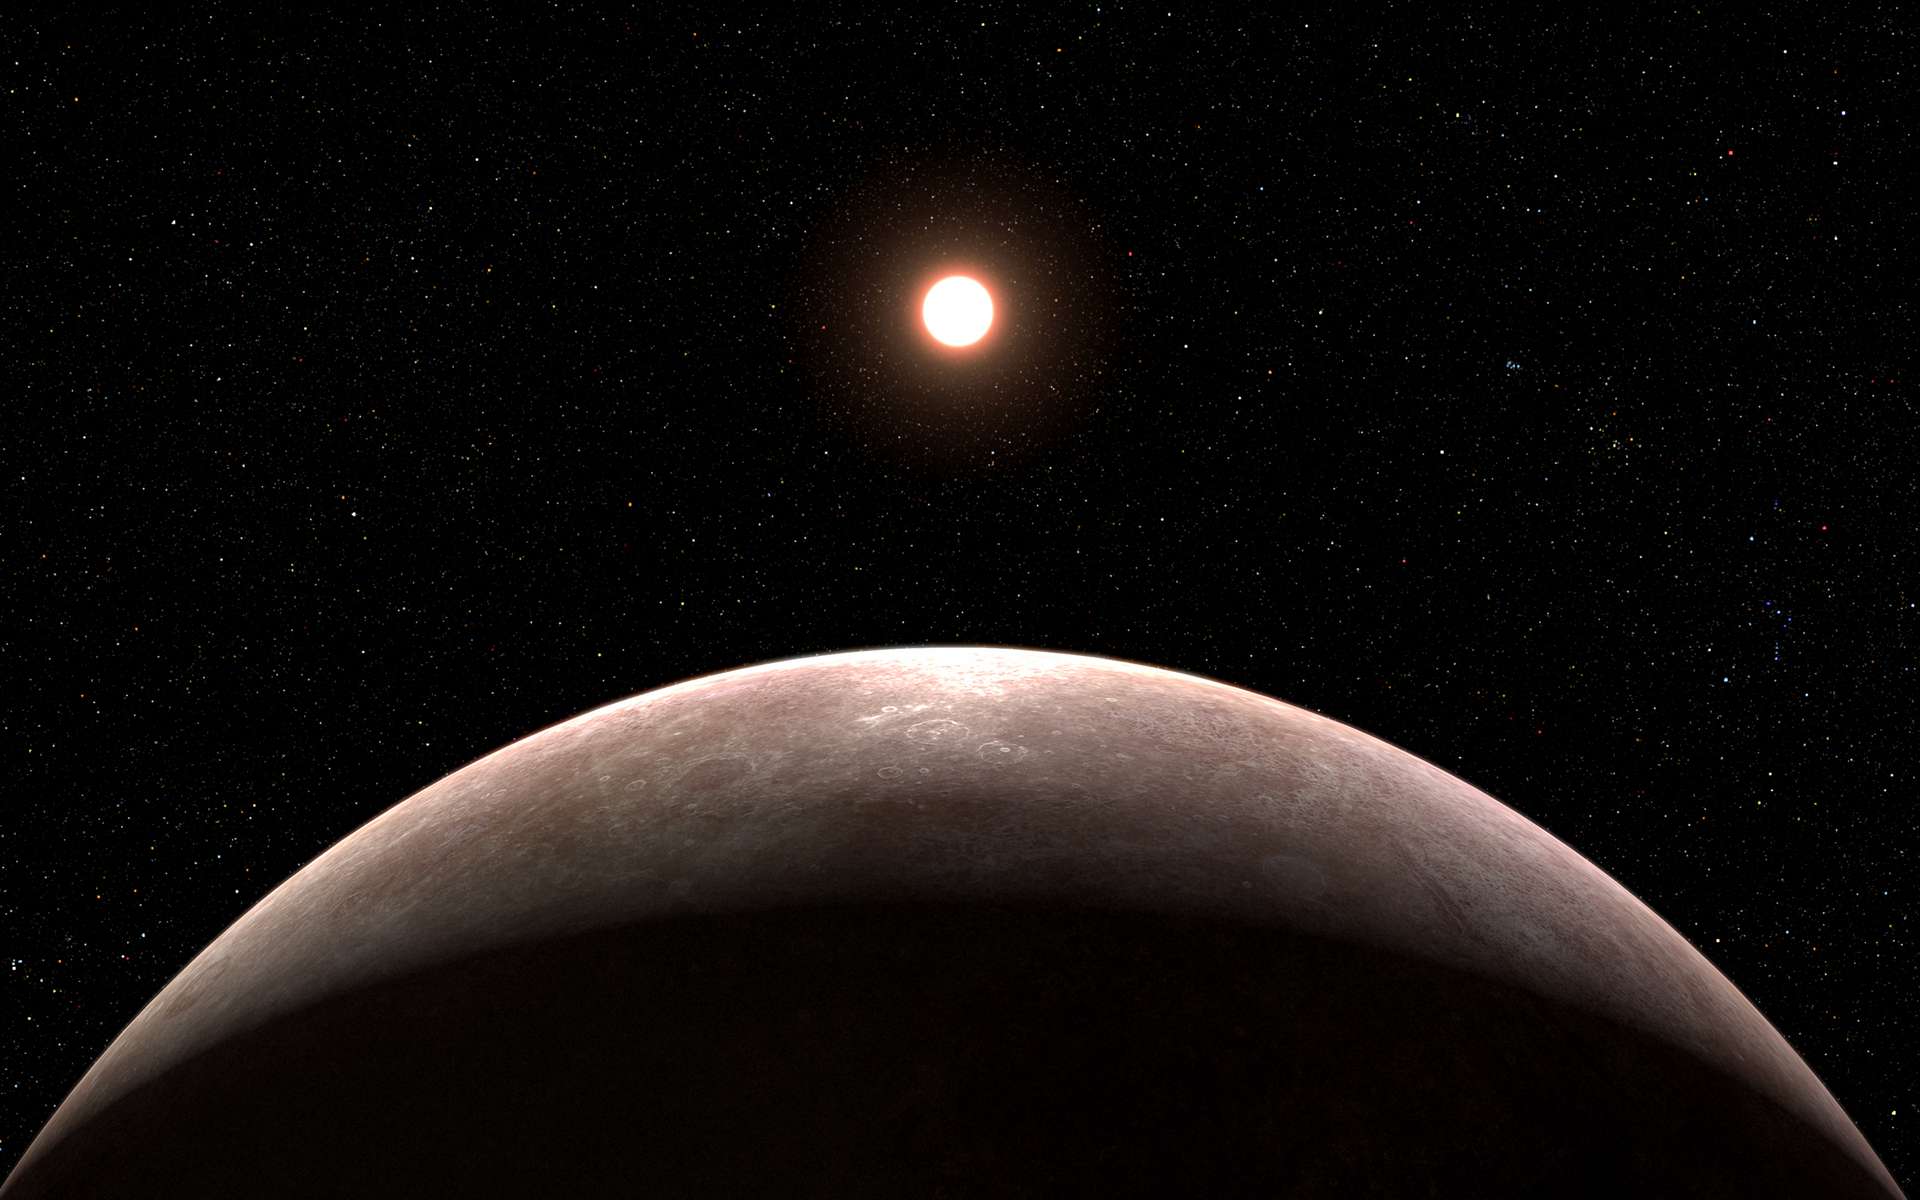 Le télescope James-Webb a débusqué sa première exoplanète et elle a la même taille que la Terre !